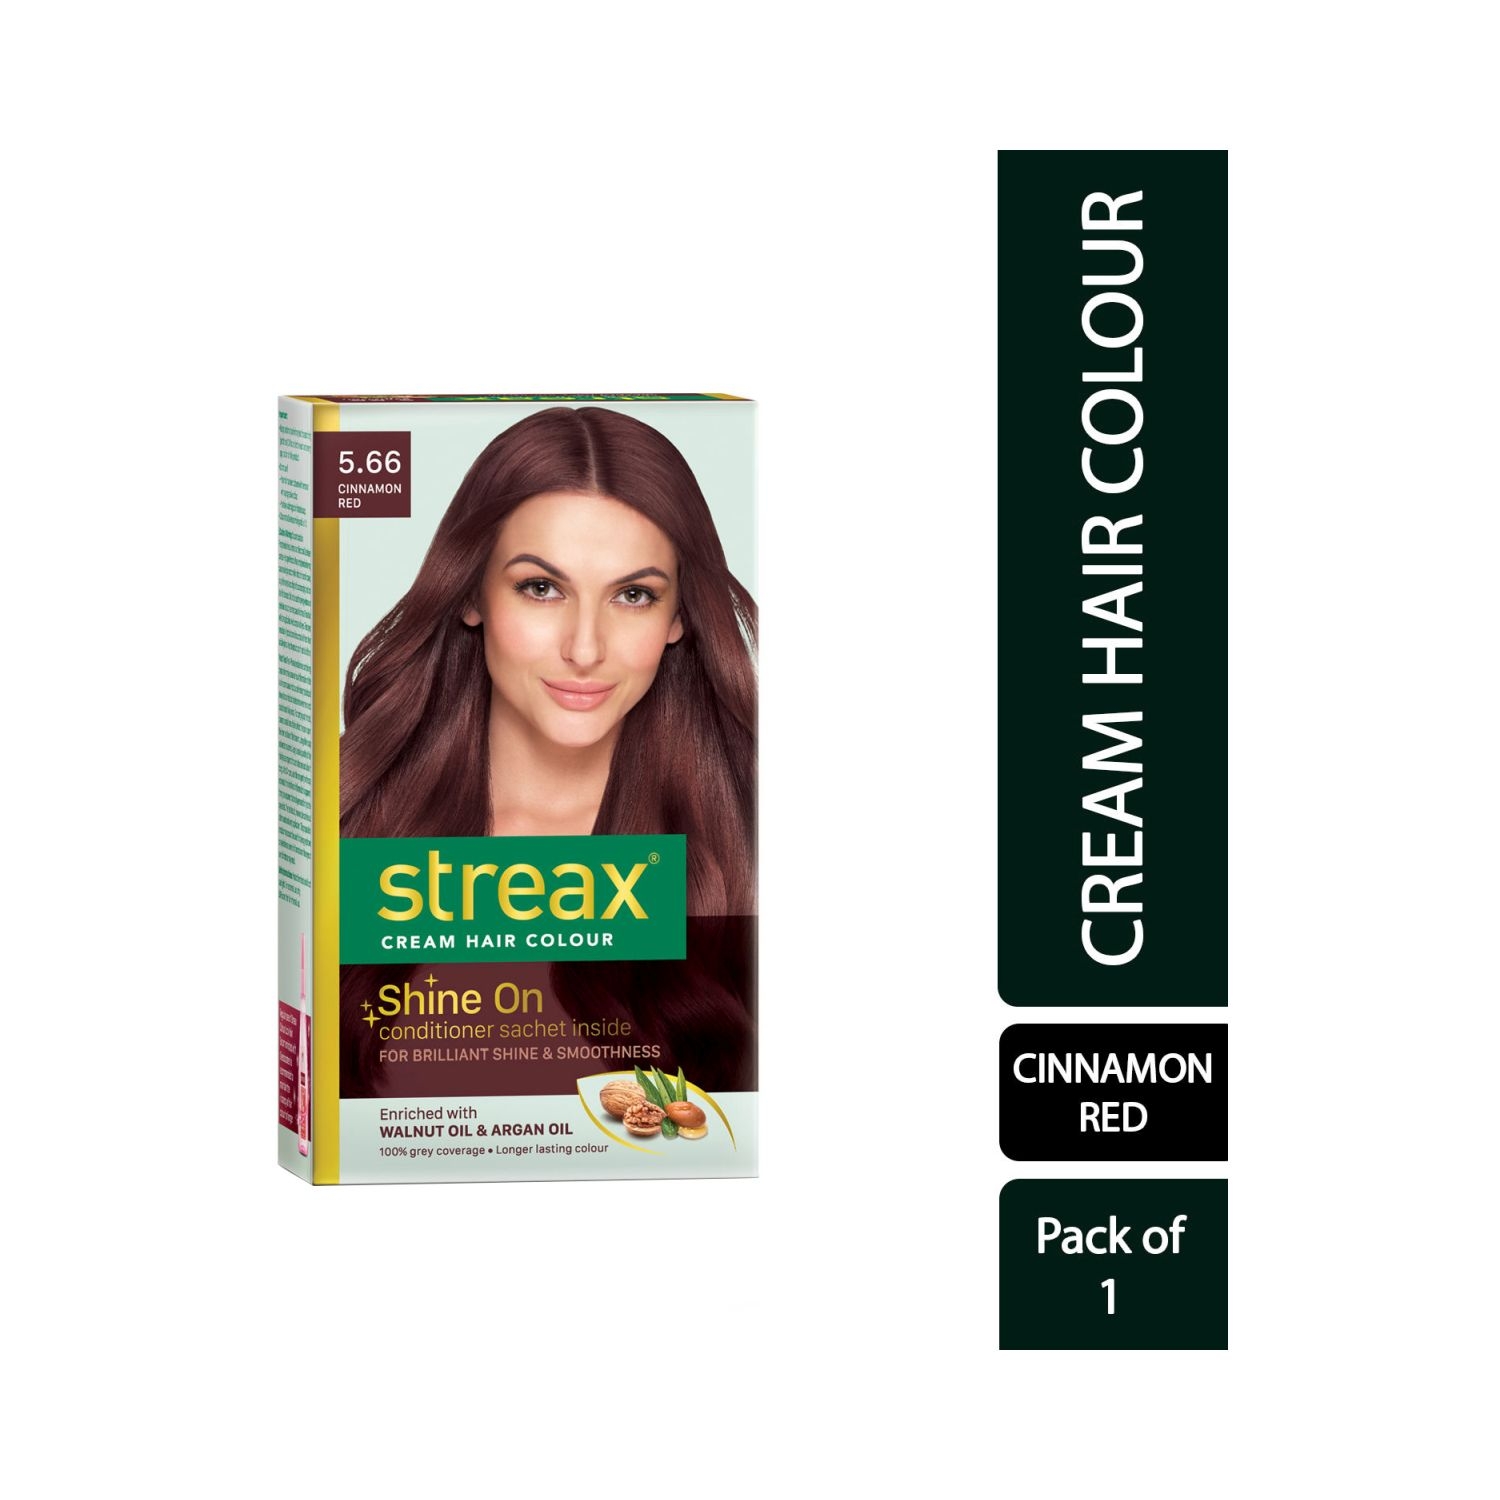 Streax Hair Colour - 5.66 Cinnamon Red (35gm+25ml)